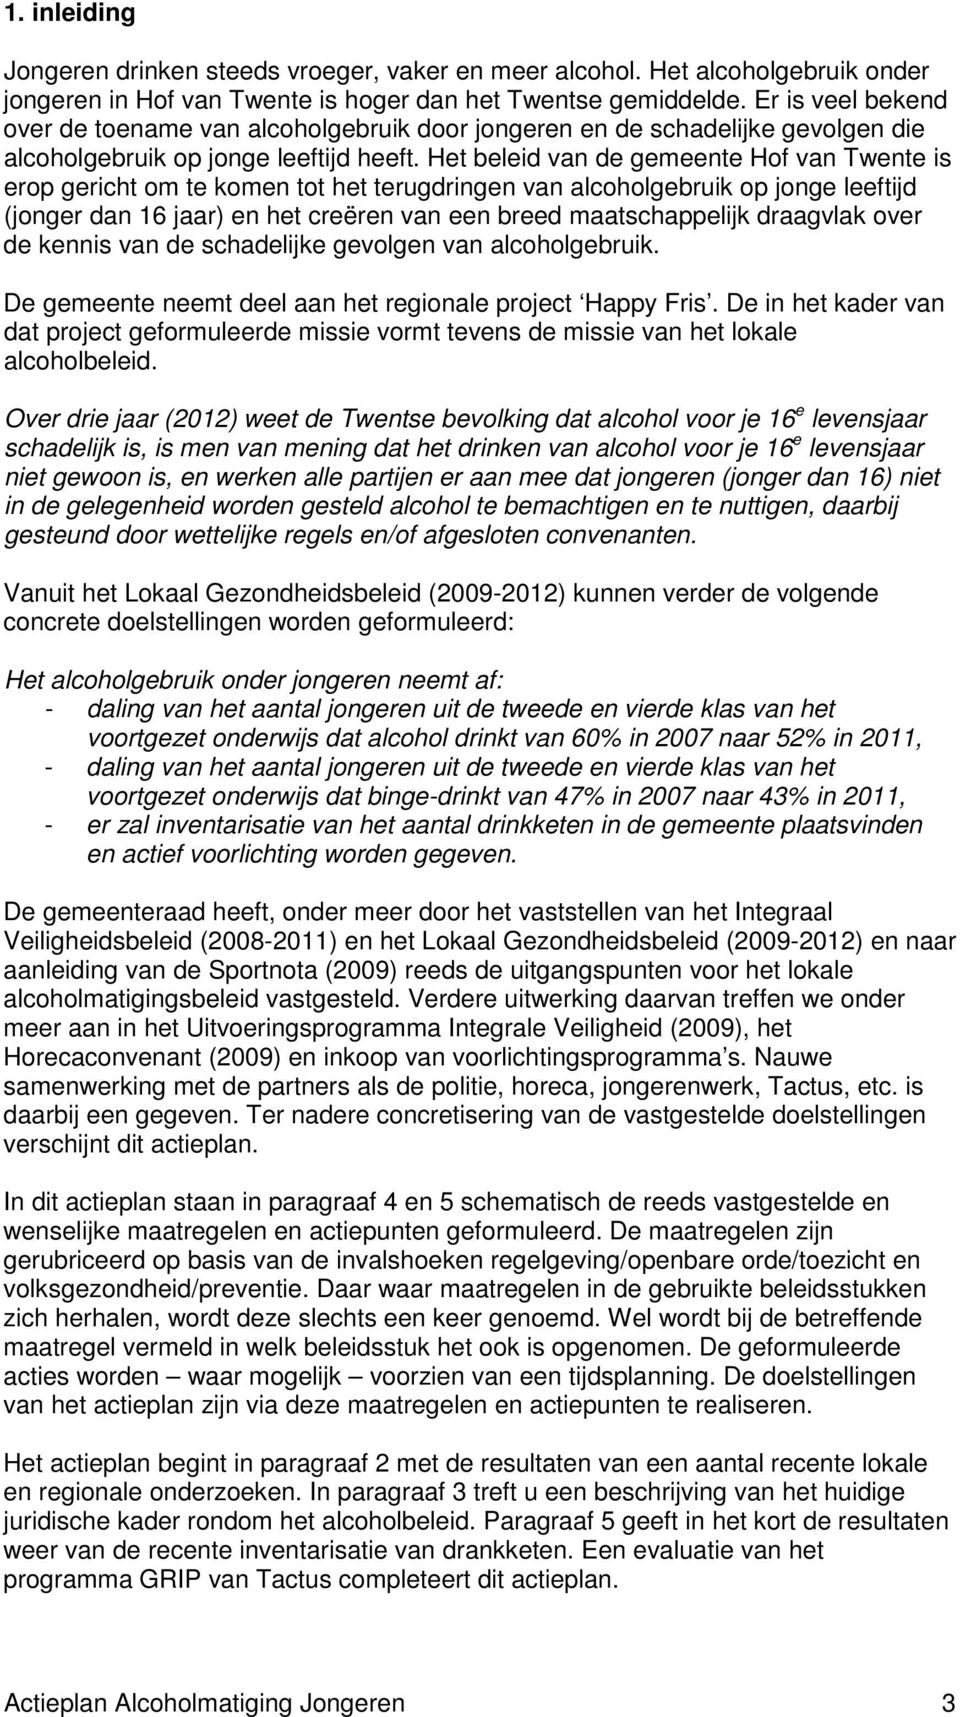 Het beleid van de gemeente Hof van Twente is erop gericht om te komen tot het terugdringen van alcoholgebruik op jonge leeftijd (jonger dan 16 jaar) en het creëren van een breed maatschappelijk